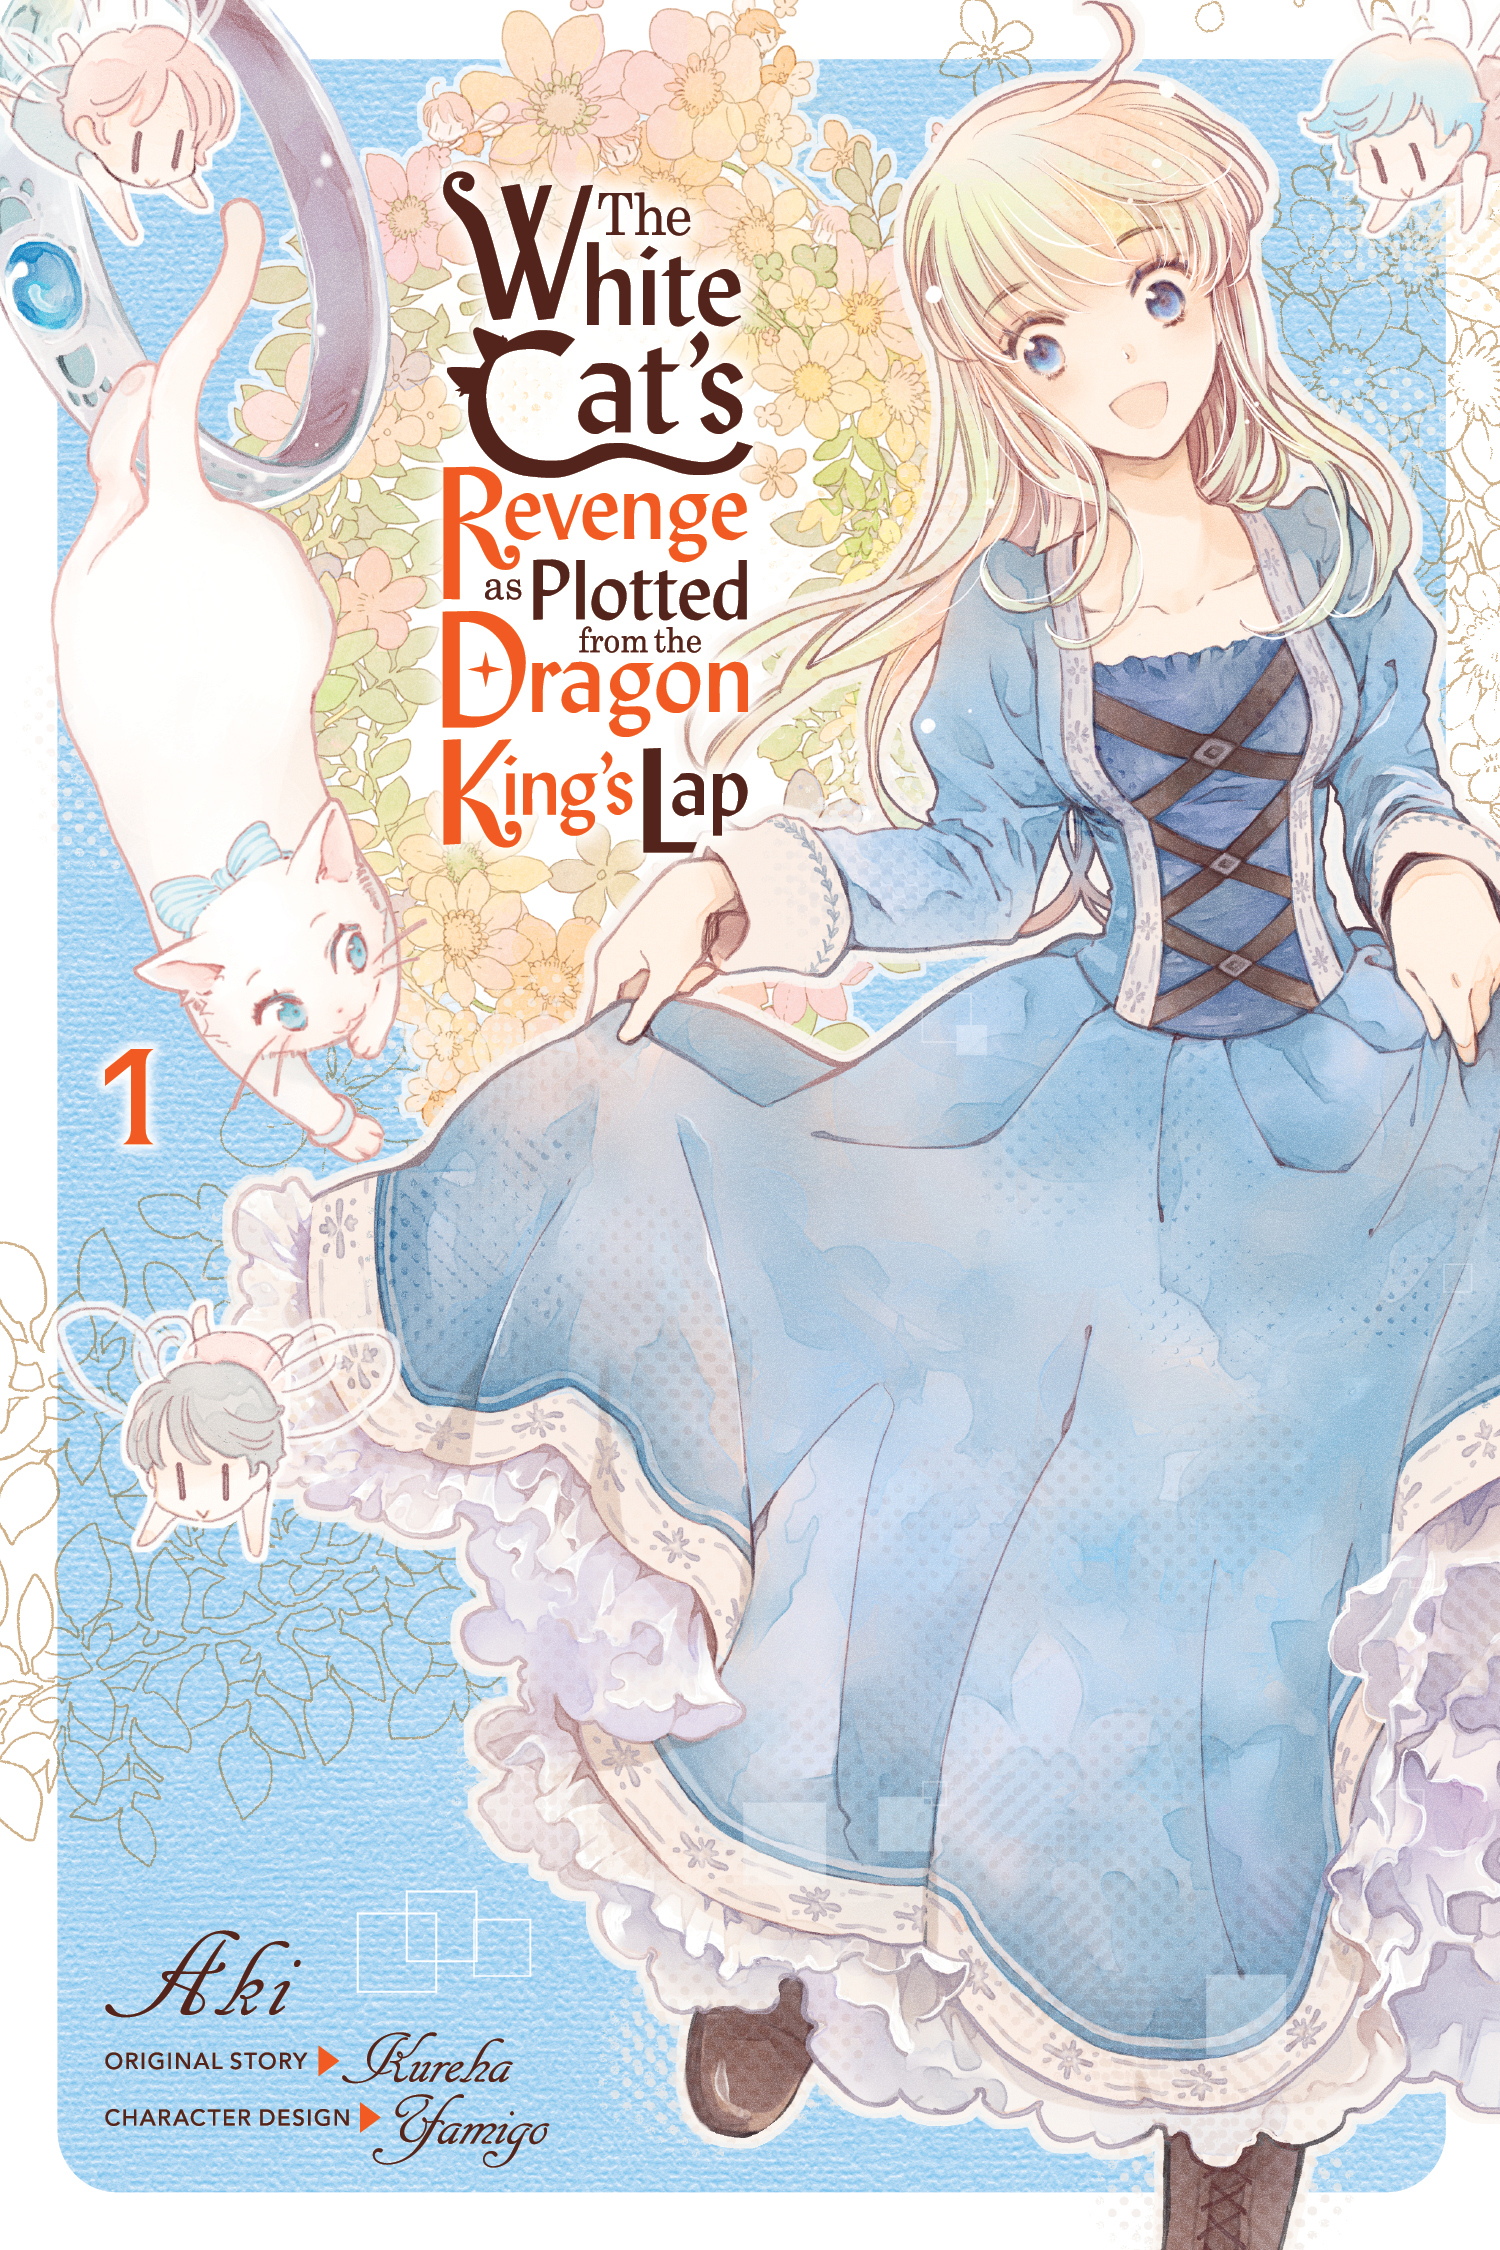 White Cats Revenge Plotted Dragon Kings Lap Manga Volume 1